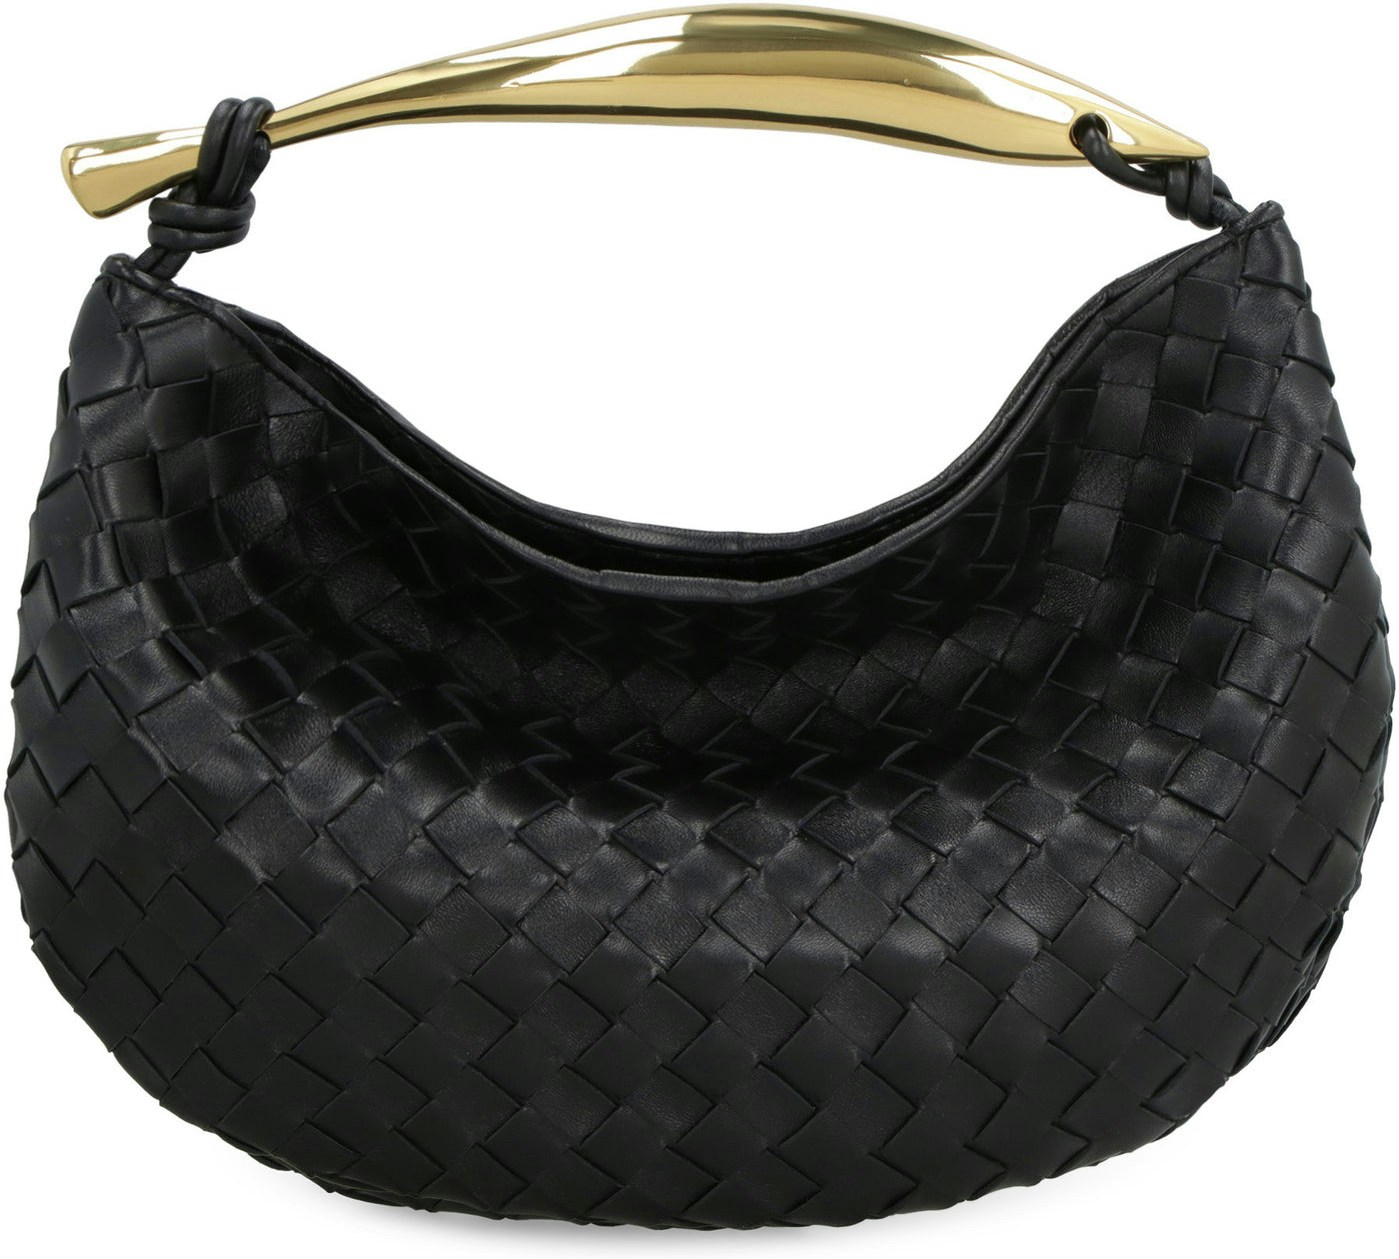 The Bottega Veneta Sardine Handbag